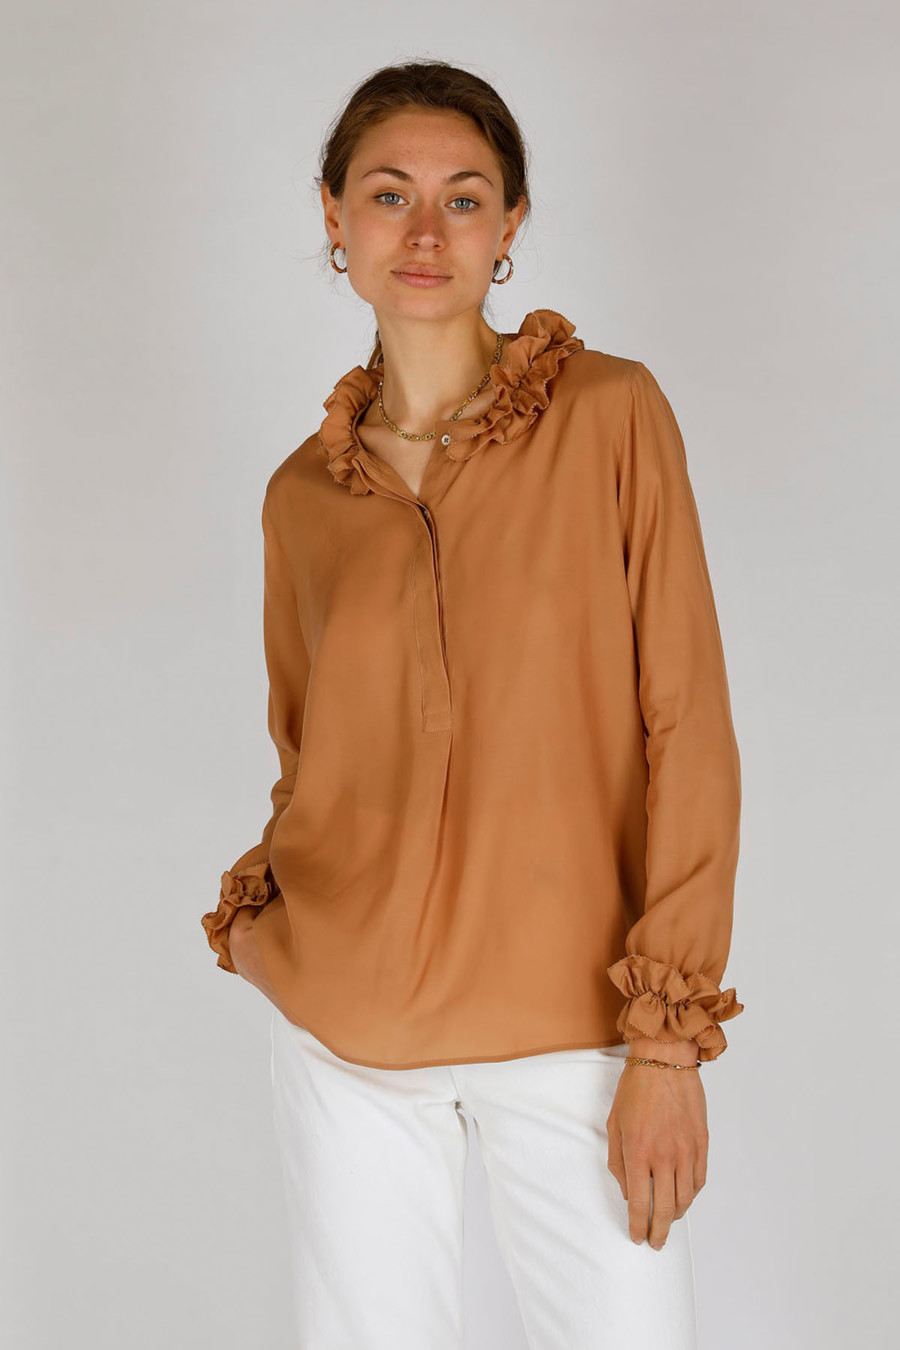 MORI – Kragenlose Bluse mit Rüschen – Farbe: Caramel